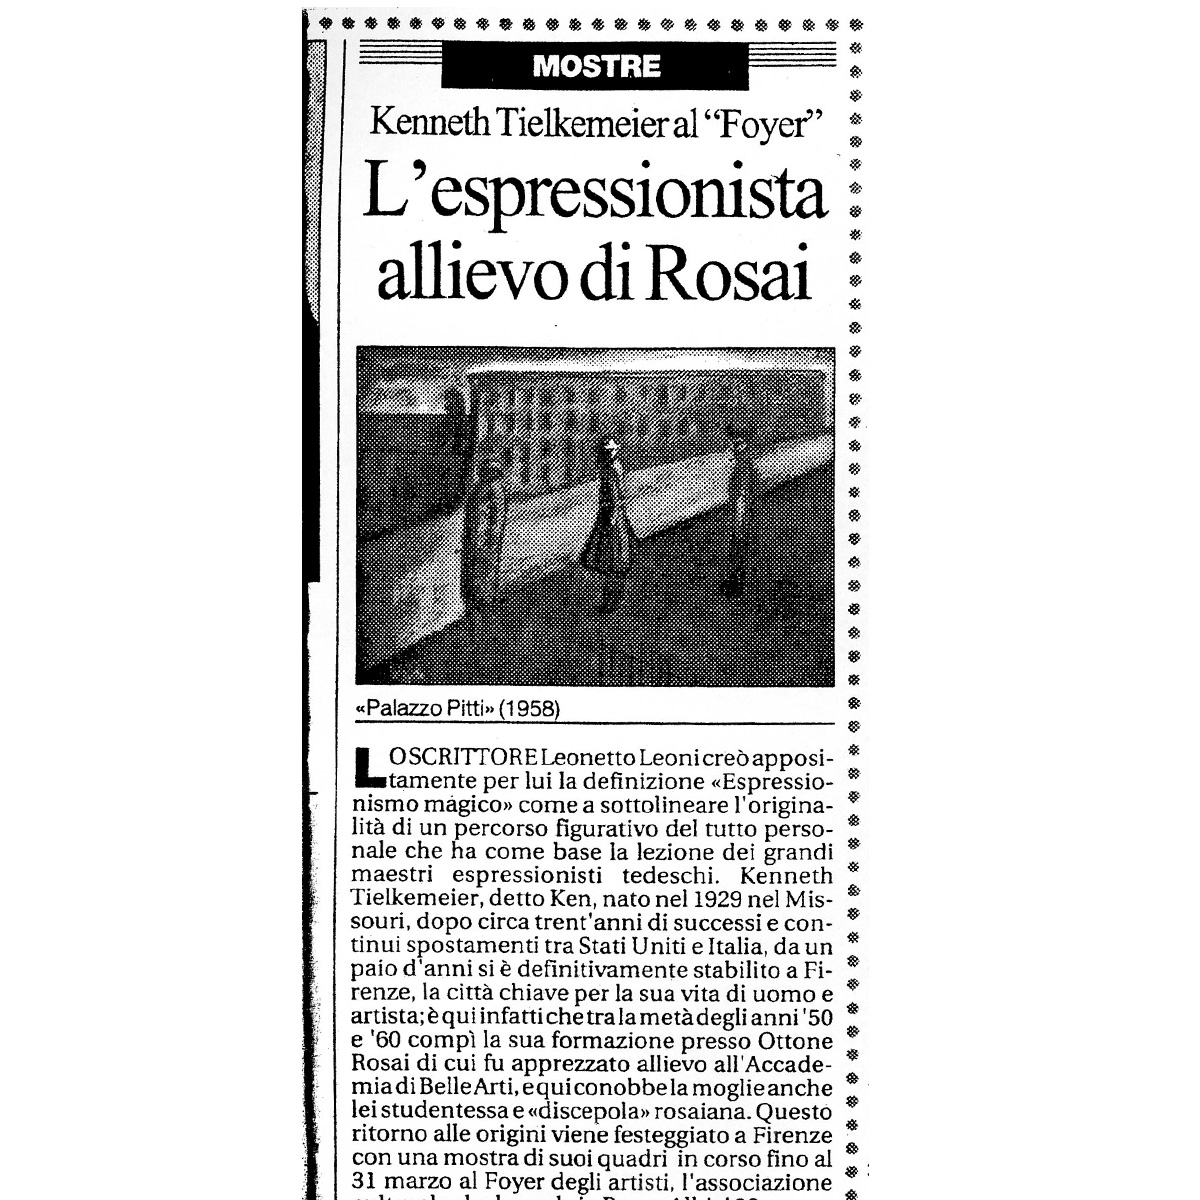 Articolo su La Repubblica